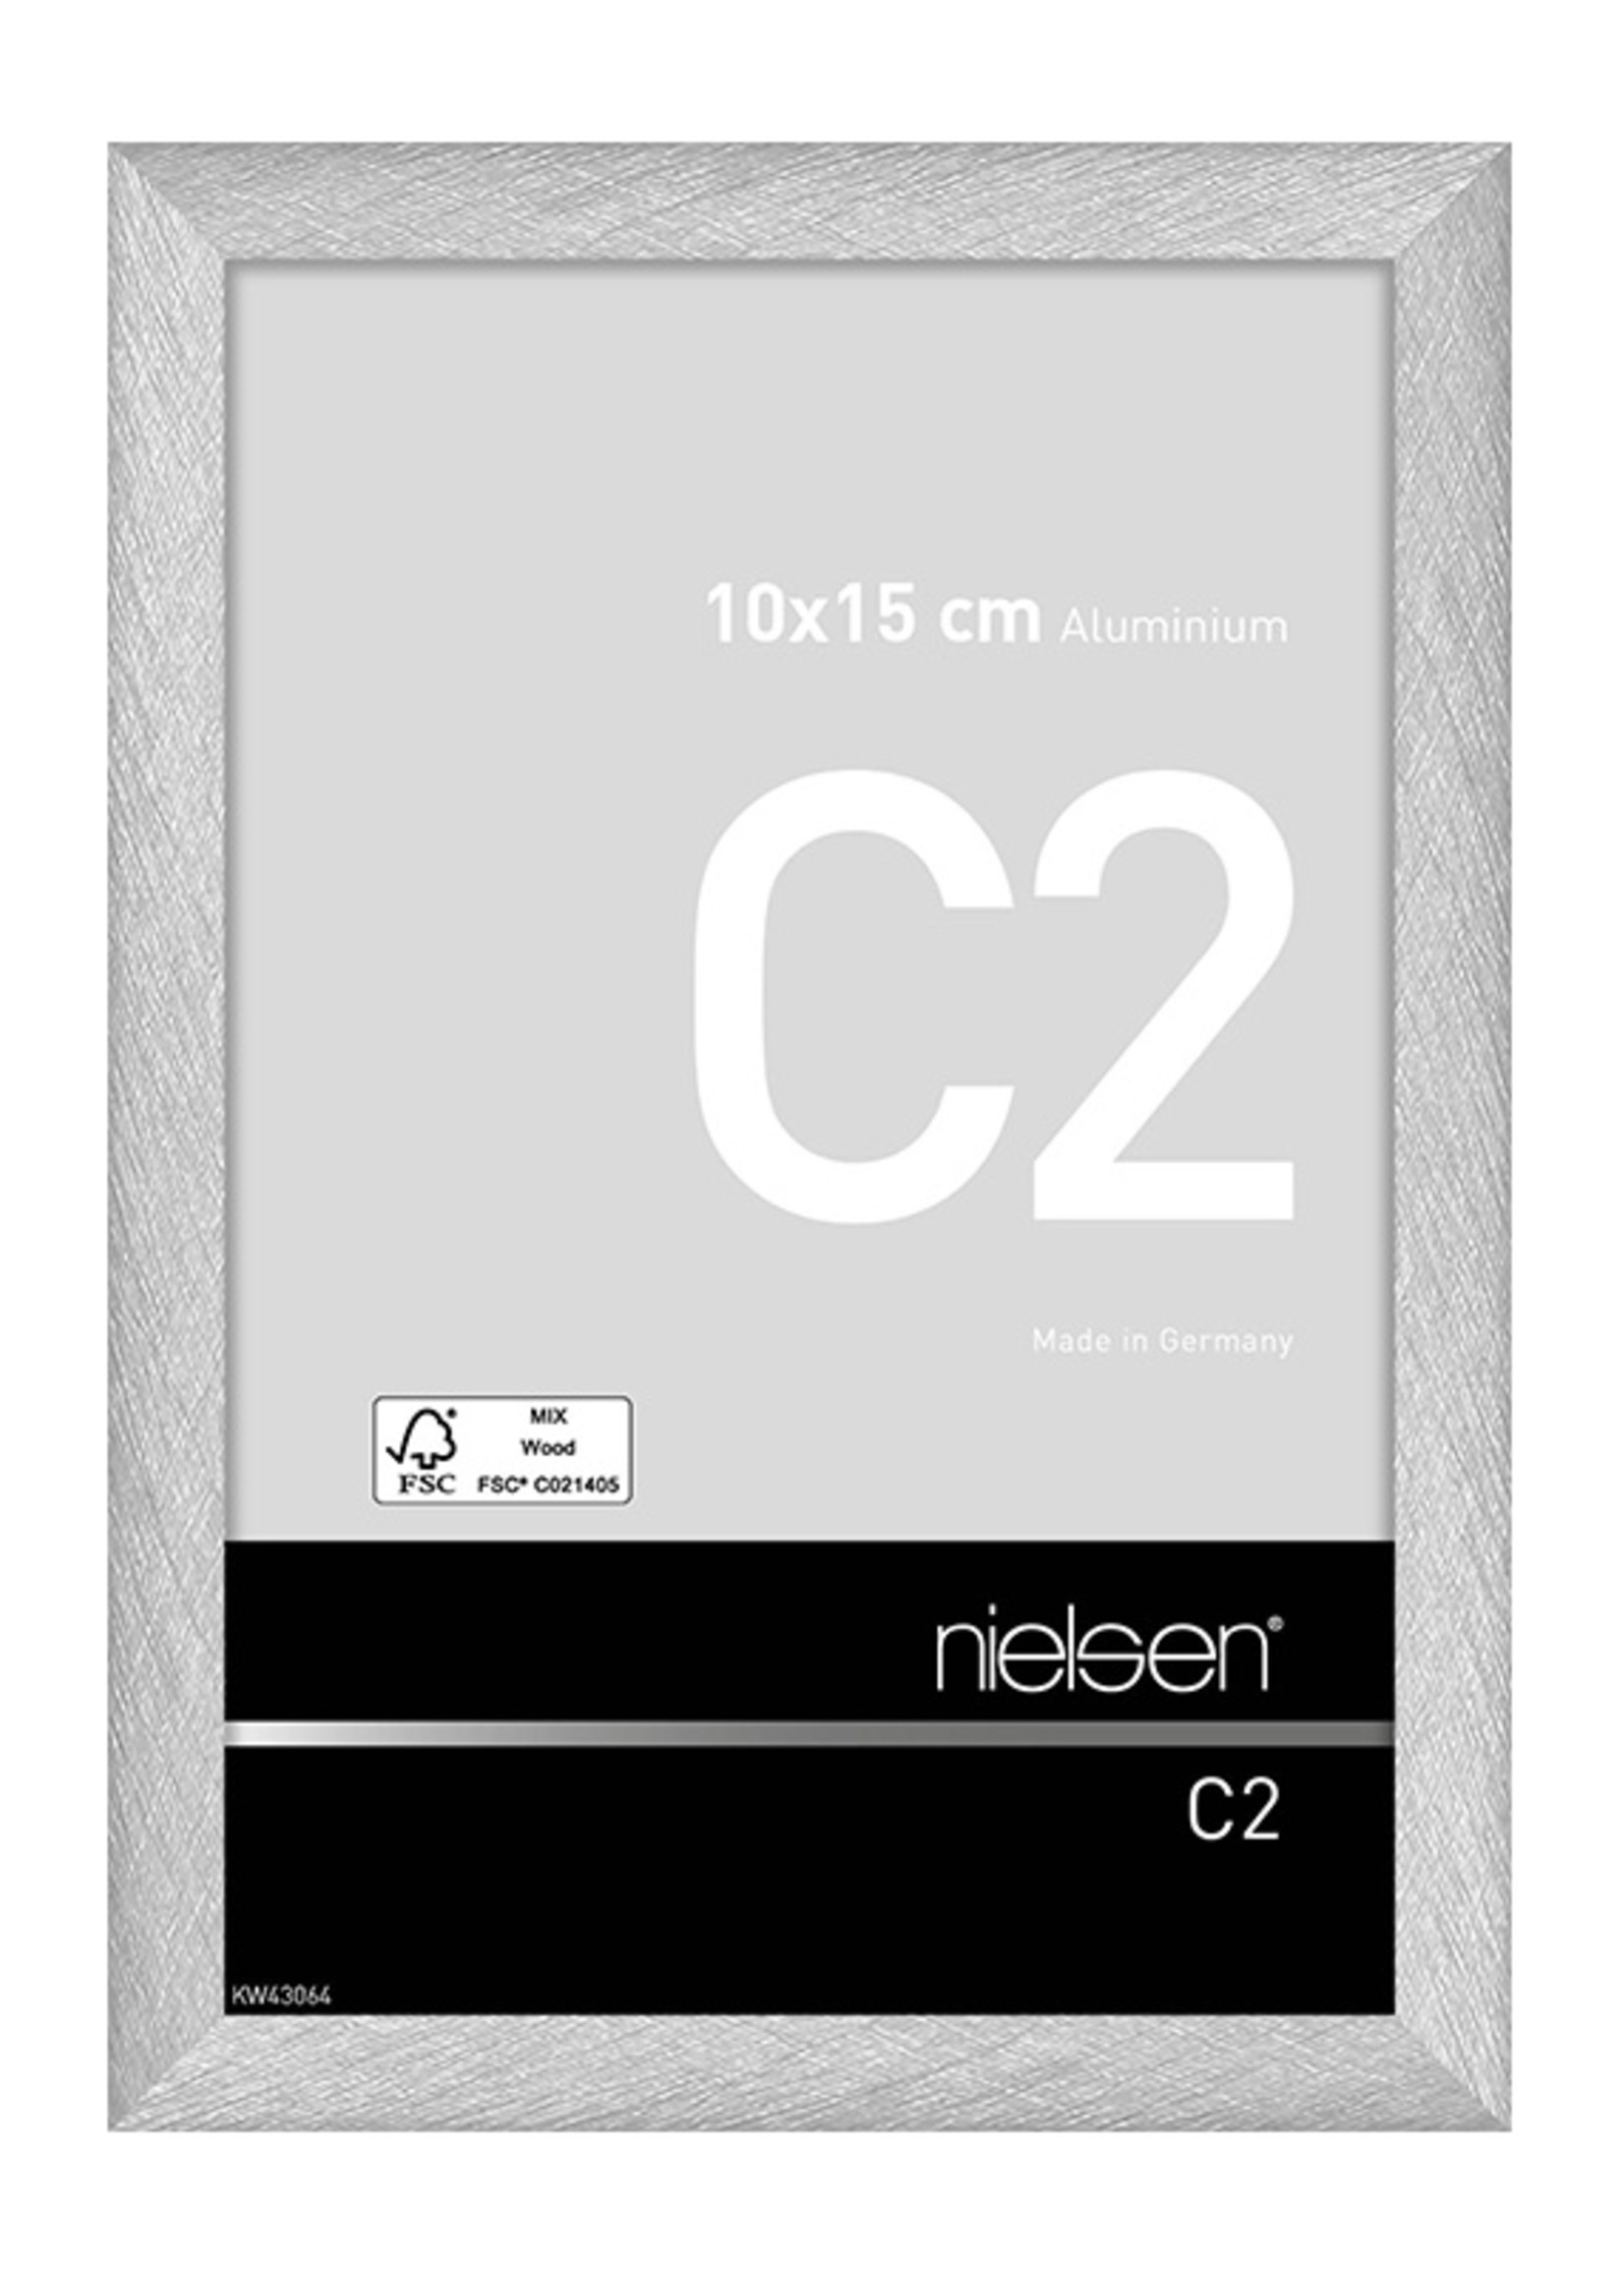 Nielsen C2 Mat Silver